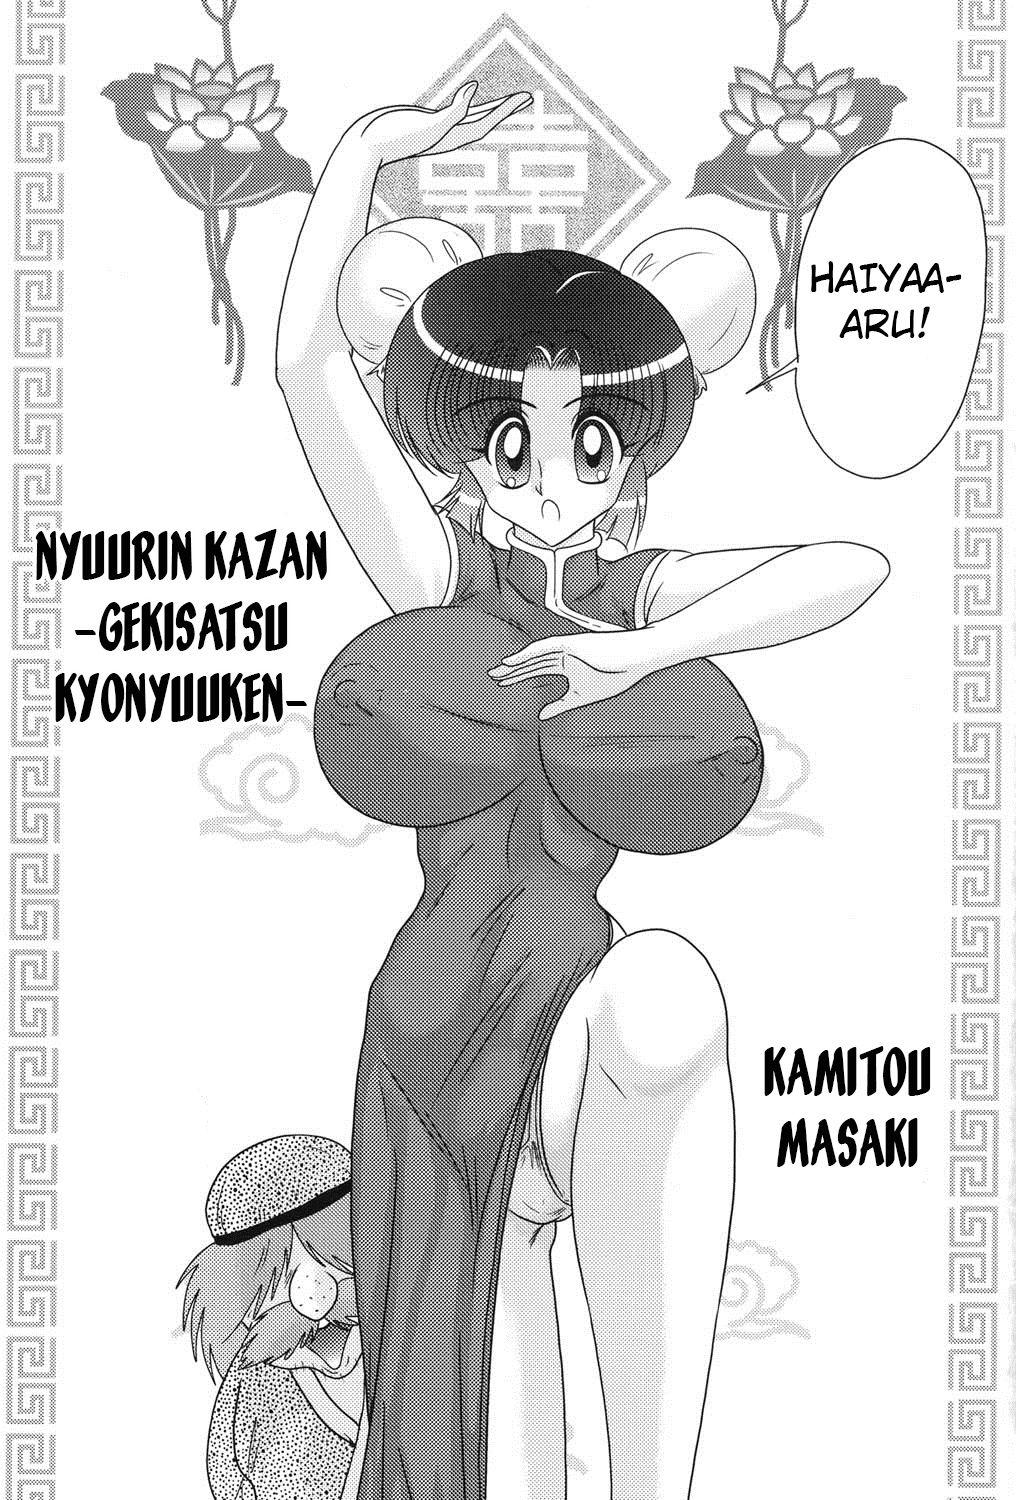 Bigbutt [Kamitou Masaki] Nyuurin Kazan -Gekisatsu Kyonyuuken- Ch. 1-2 [English] [CoC] Scene - Page 2